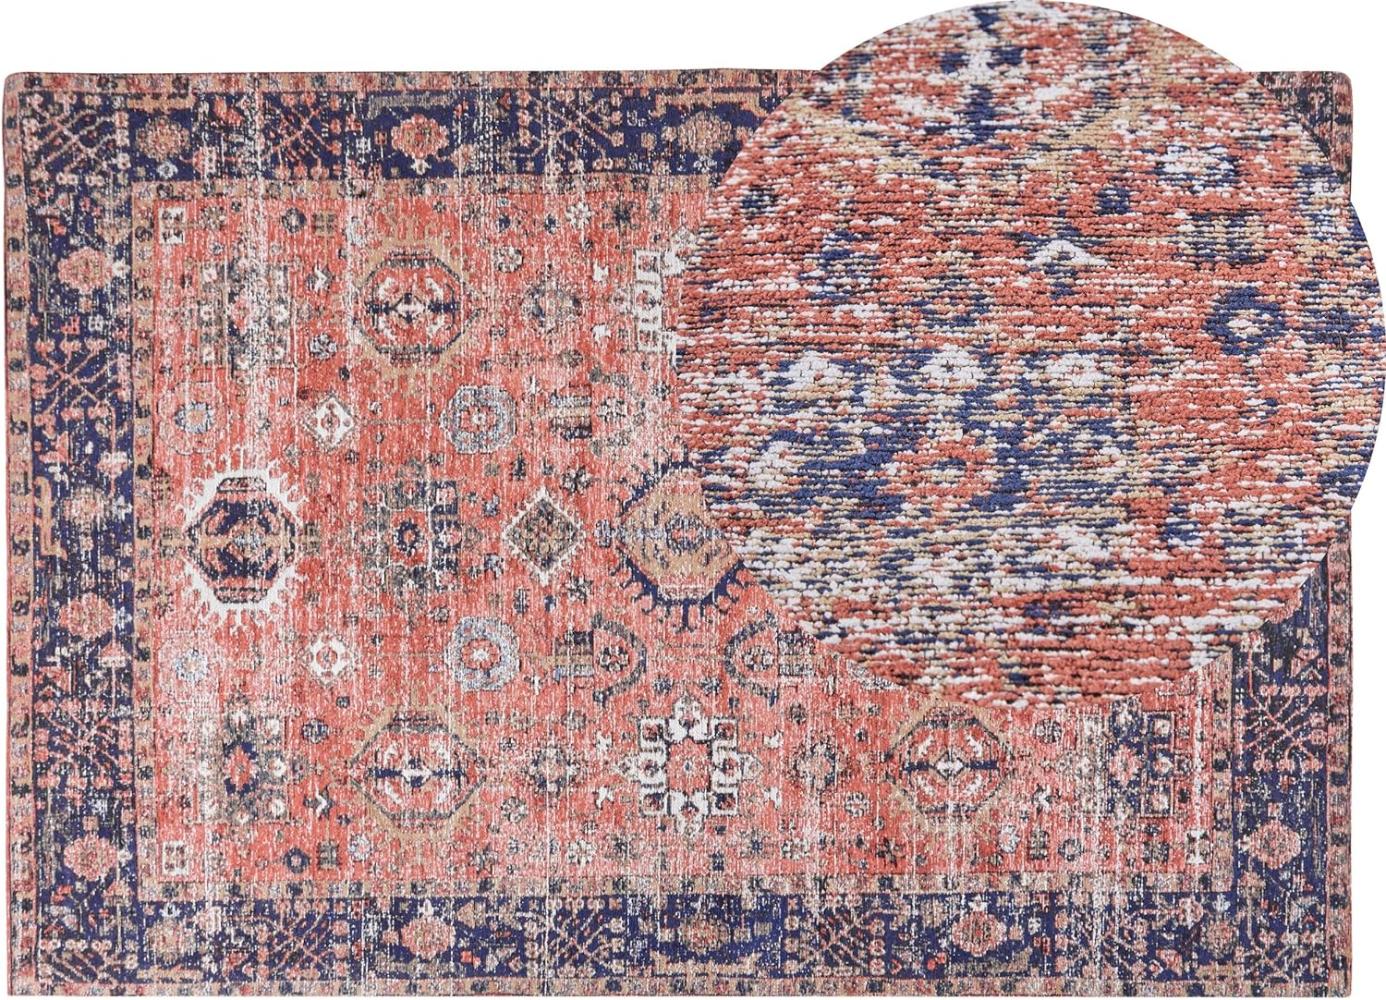 Teppich Baumwolle rot blau 140 x 200 cm orientalisches Muster Kurzflor KURIN Bild 1